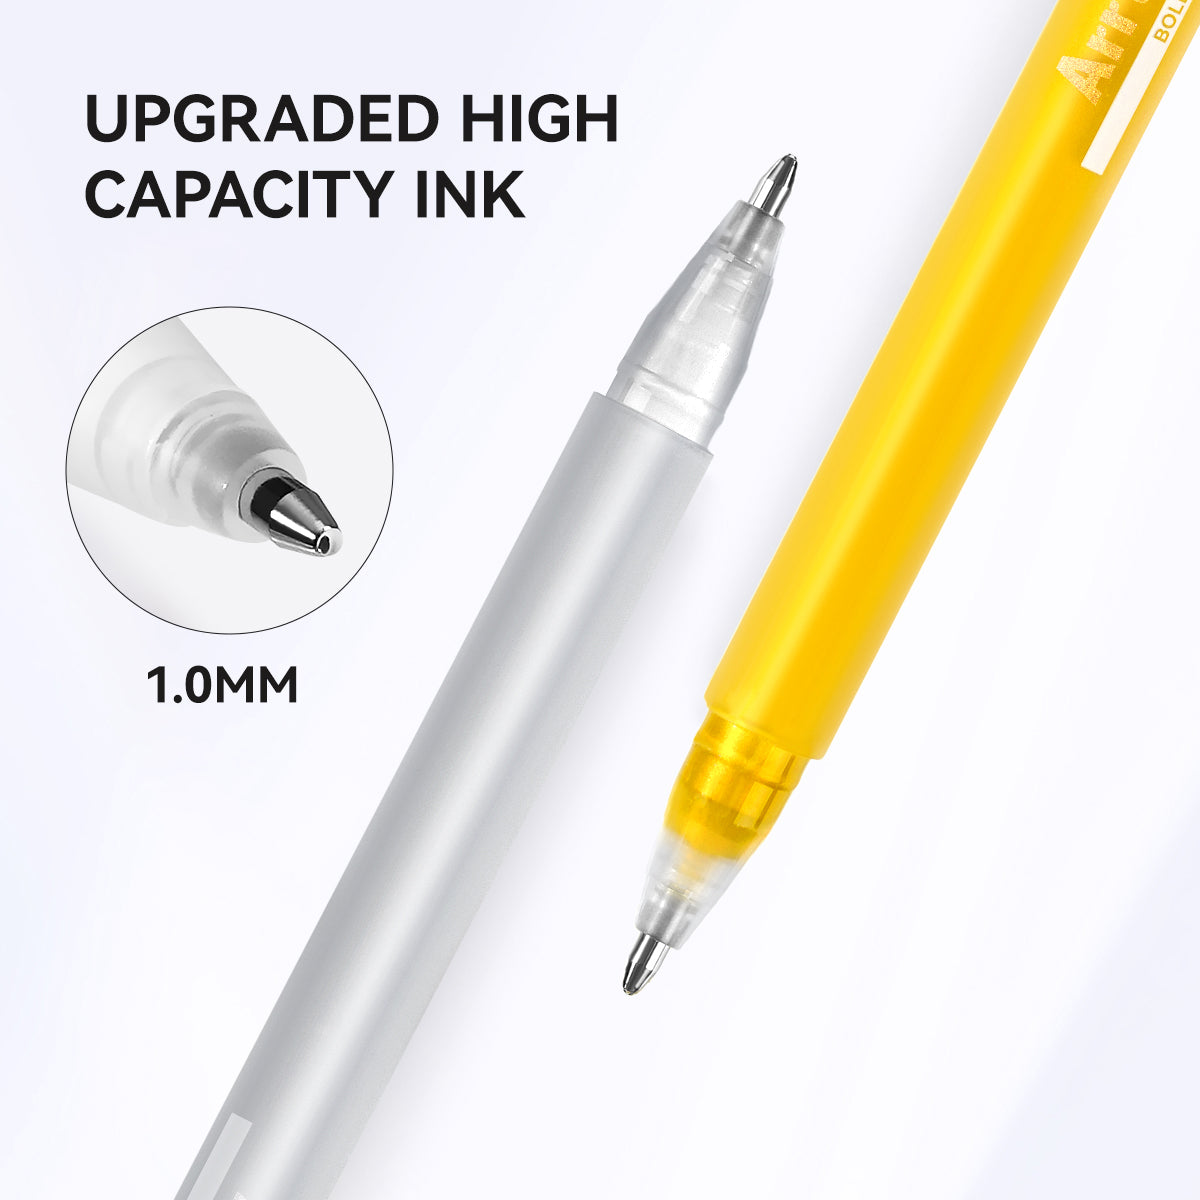 Arrtx – stylos à encre gel, couleur or et argent, paquet de 8, grande capacité, à encre blanche